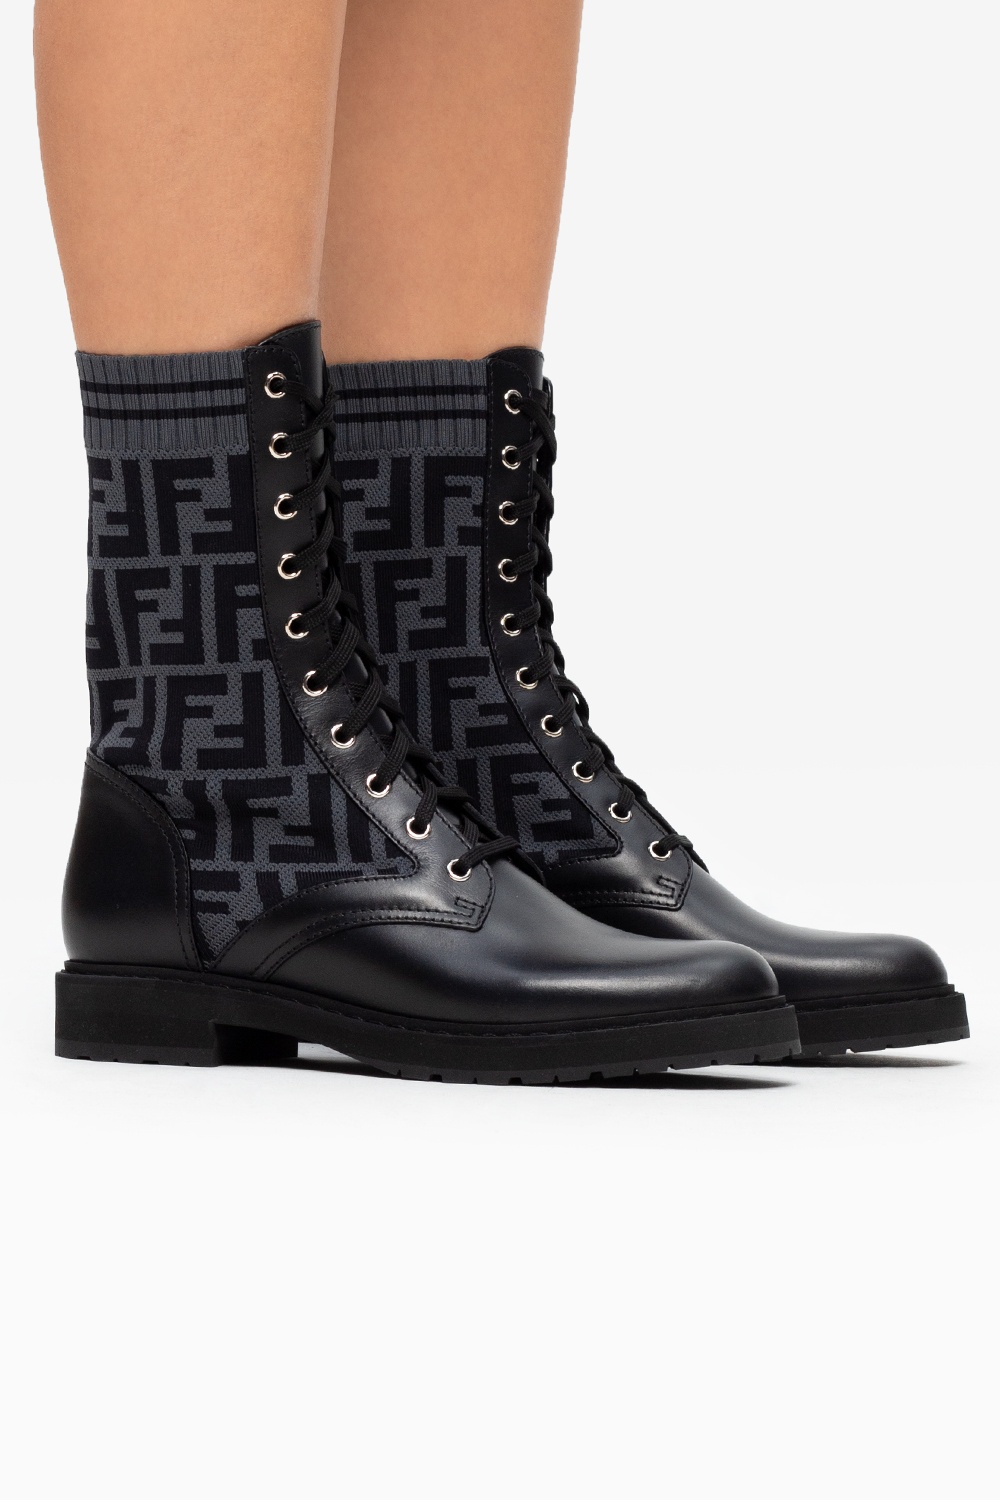 fendi boots on sale